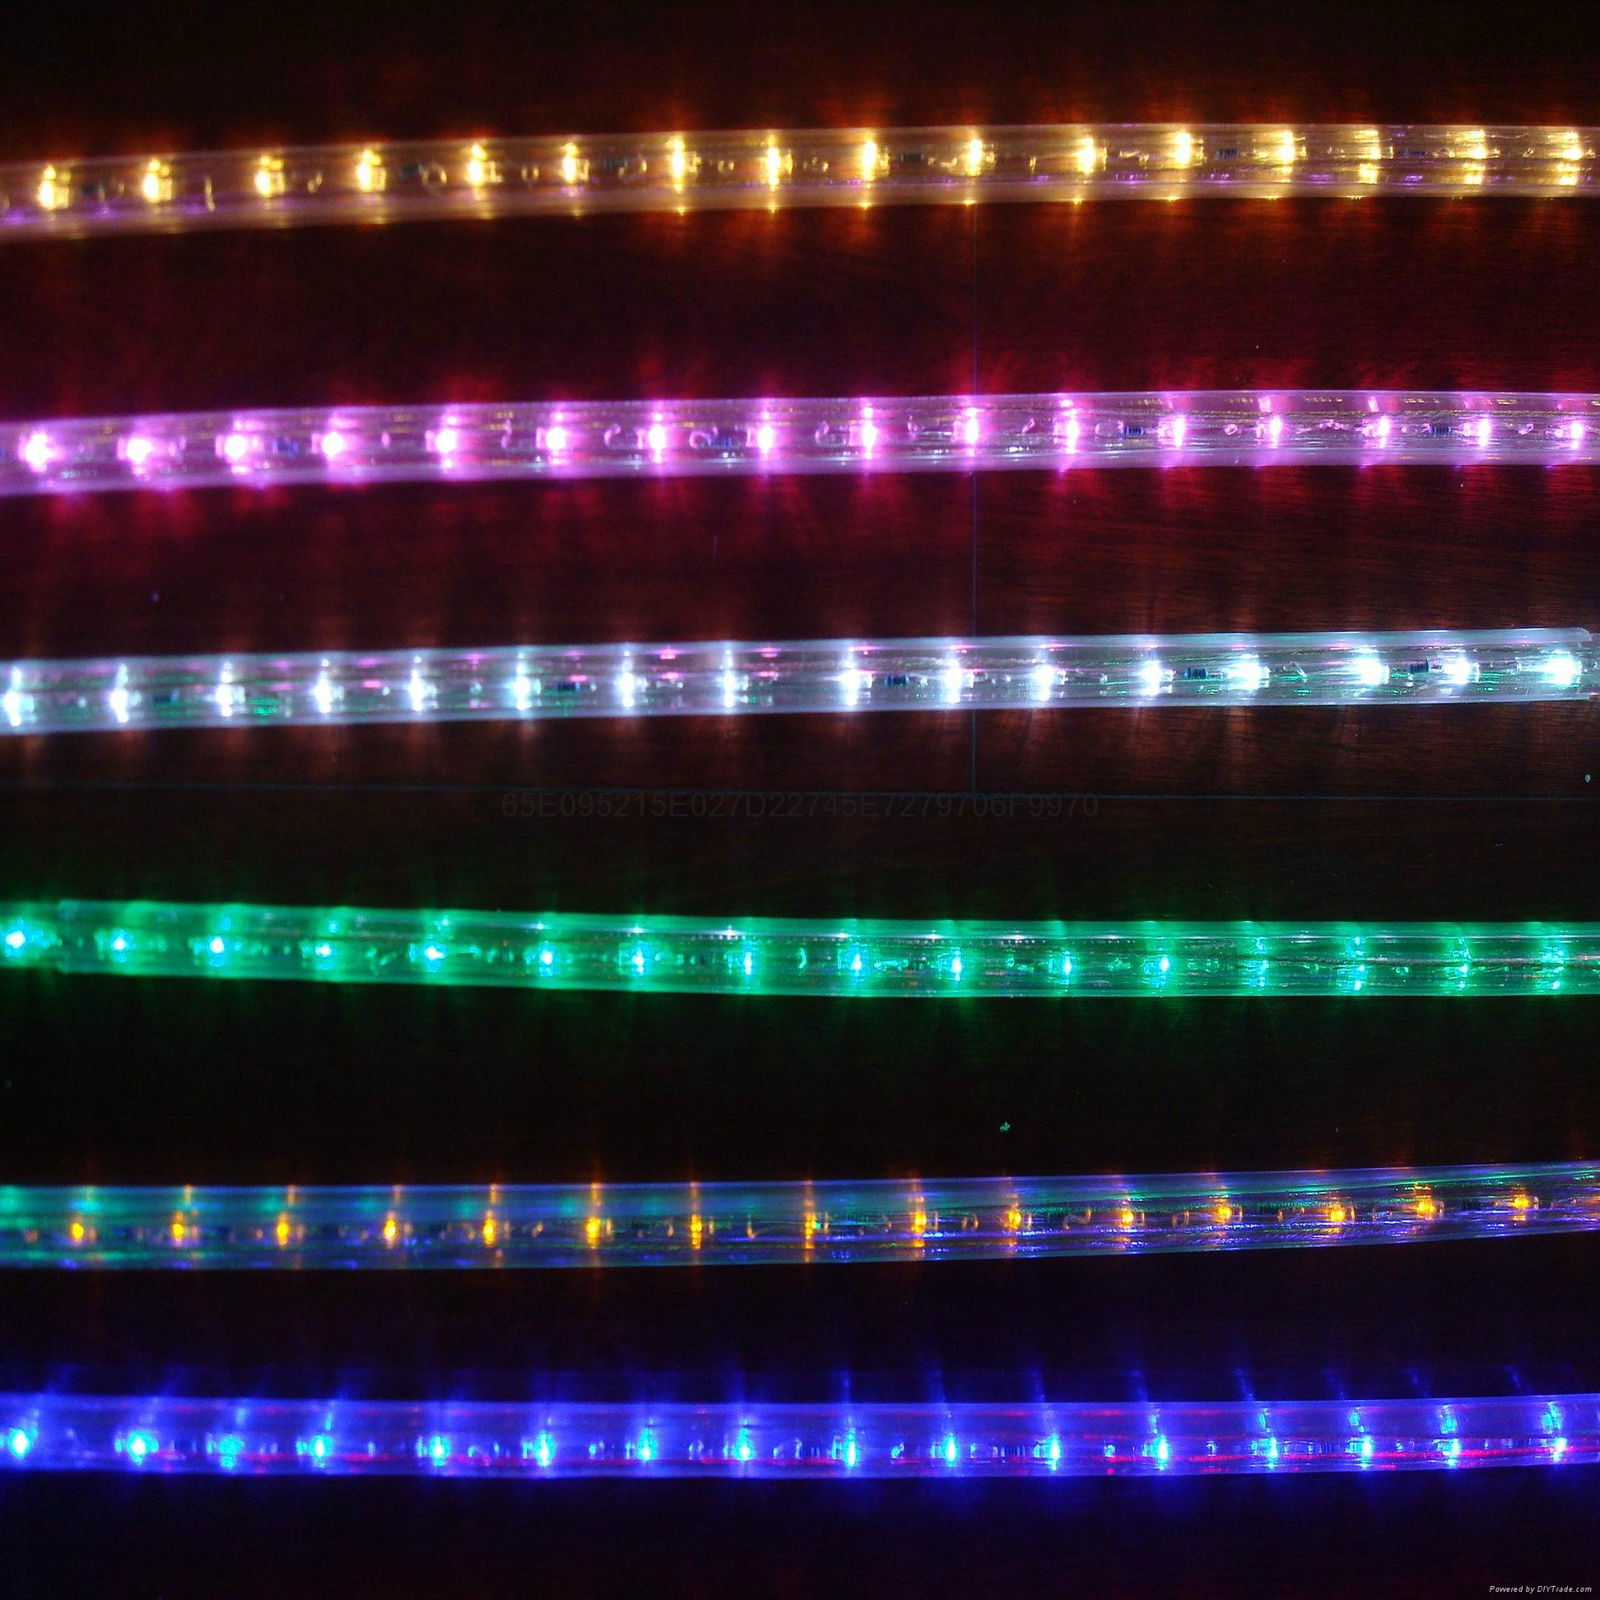 LED彩虹管